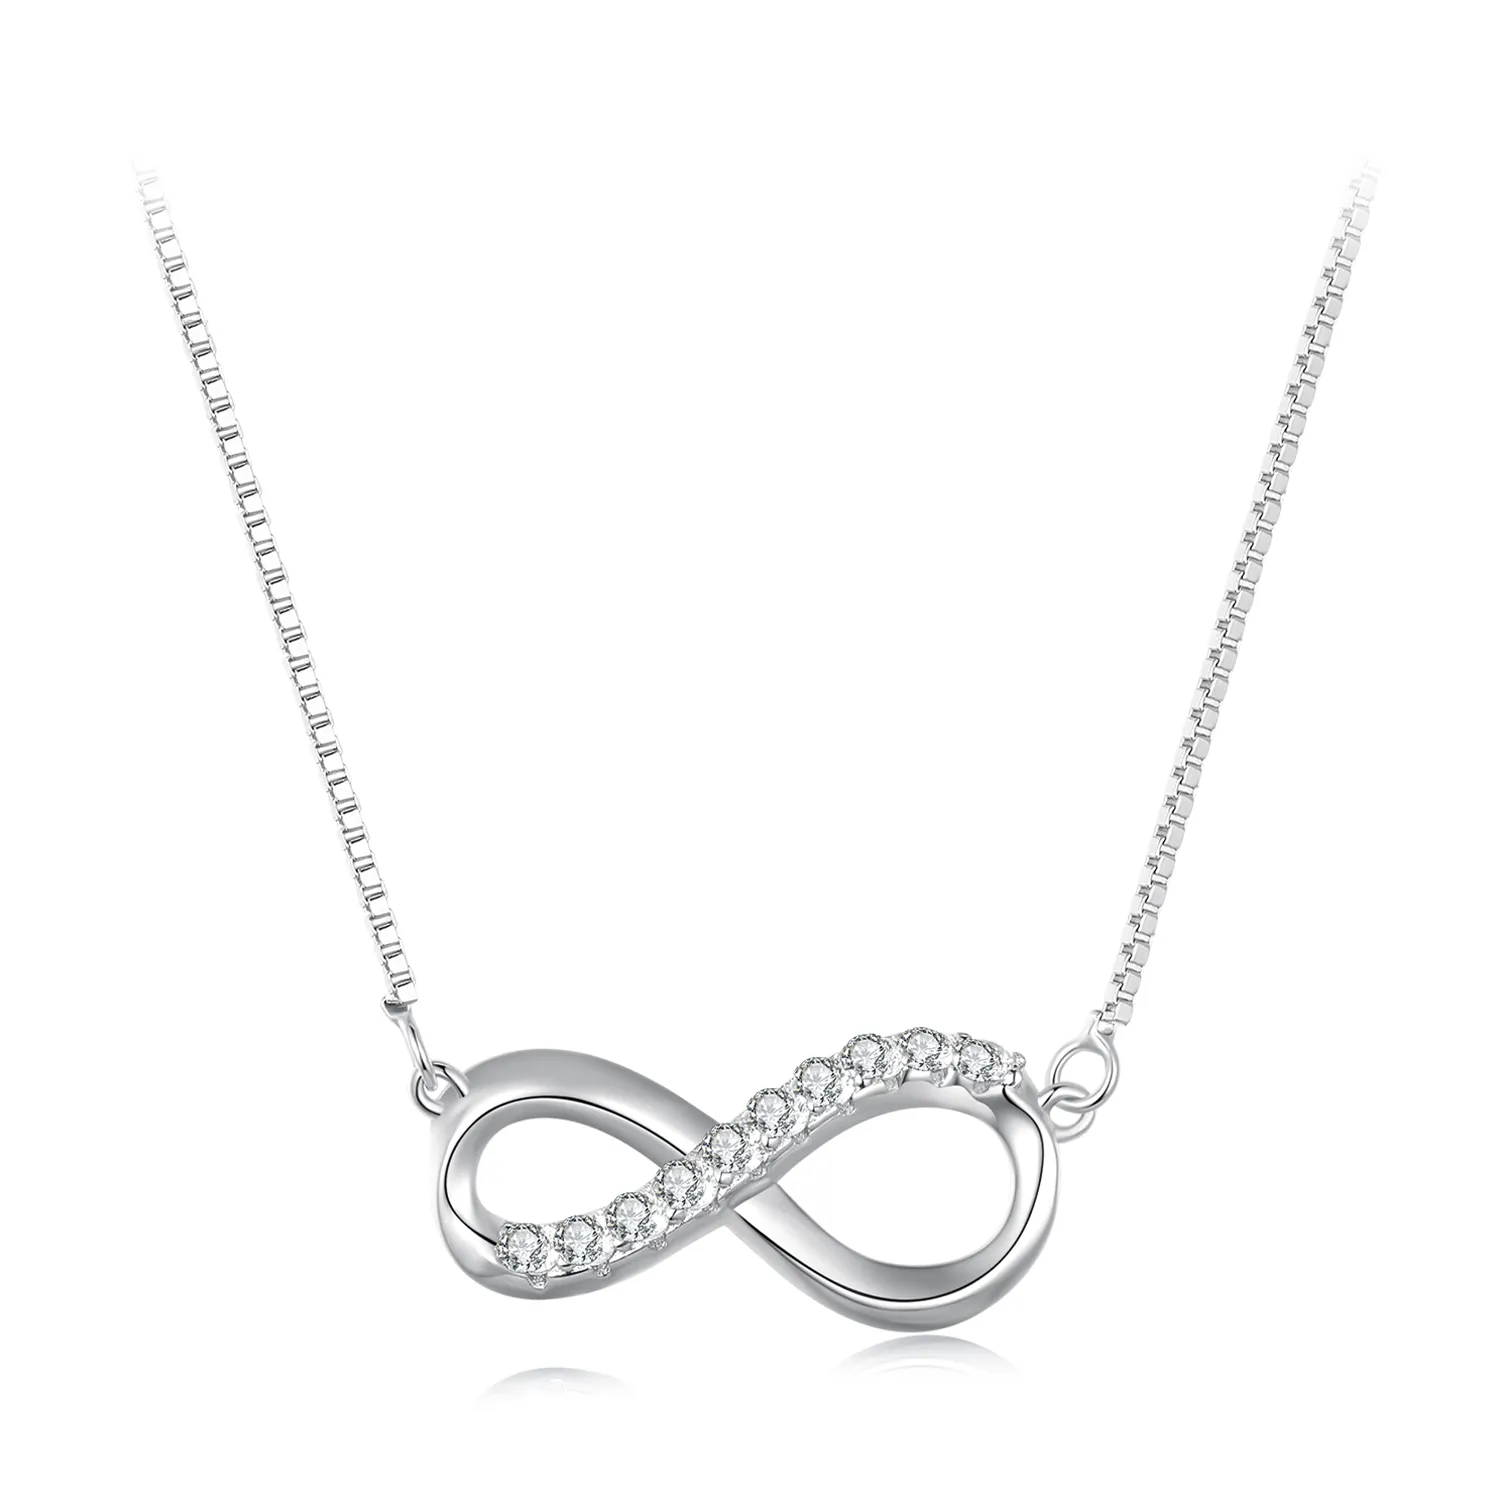 Pandora Style Möbius Strip Necklace (One Certificate) - MSN018